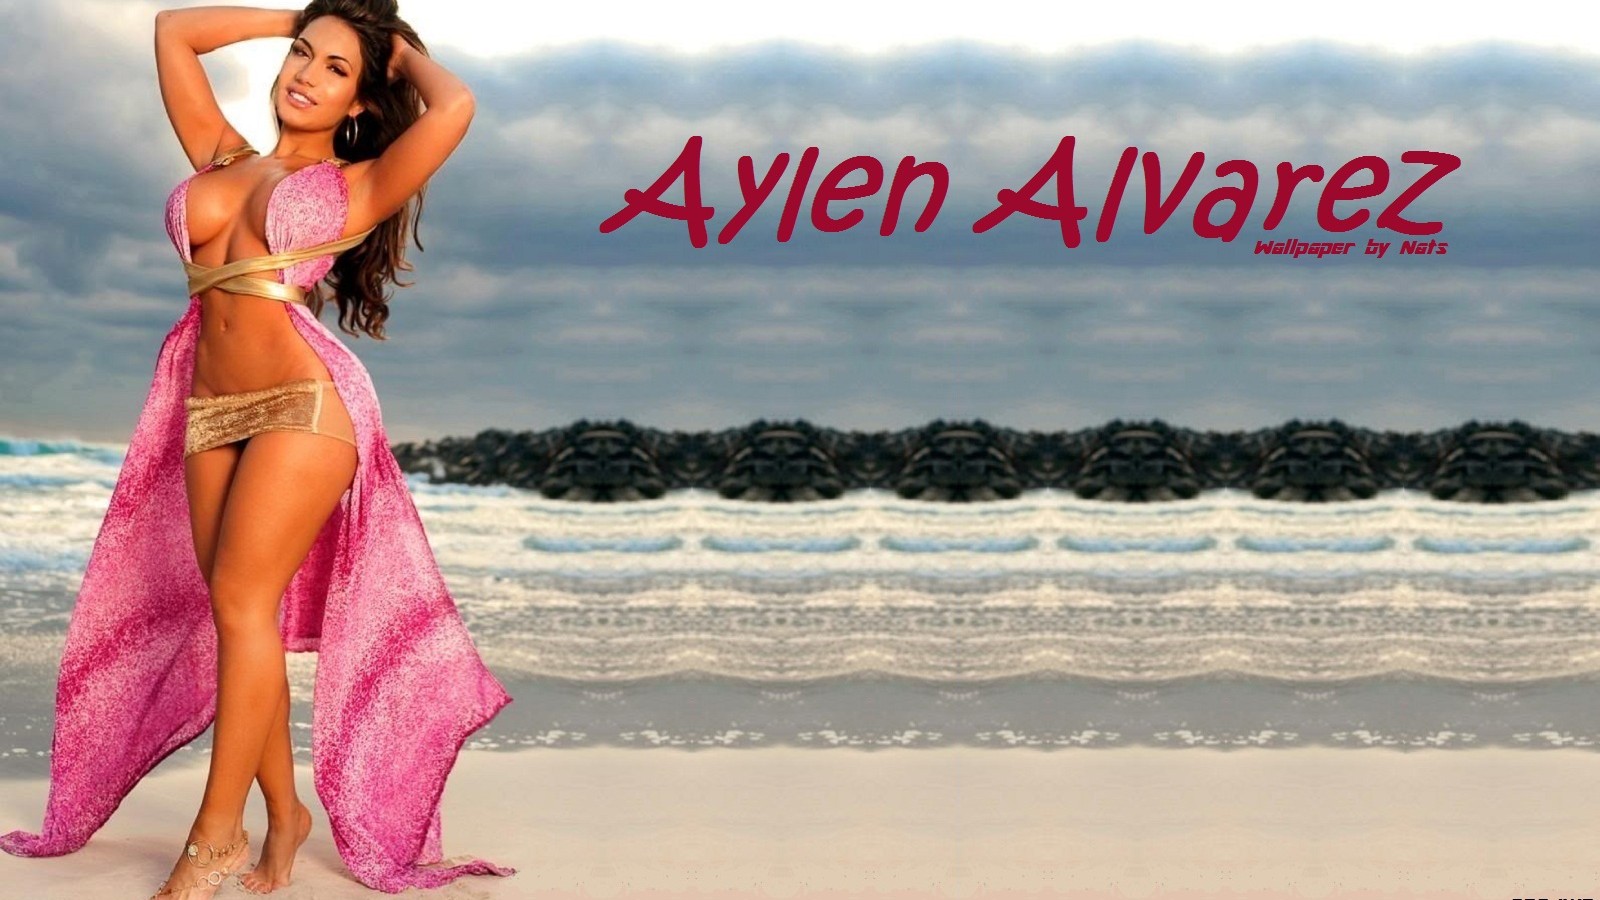 Download full size Aylen Alvarez wallpaper / Celebrities Female / 1600x900